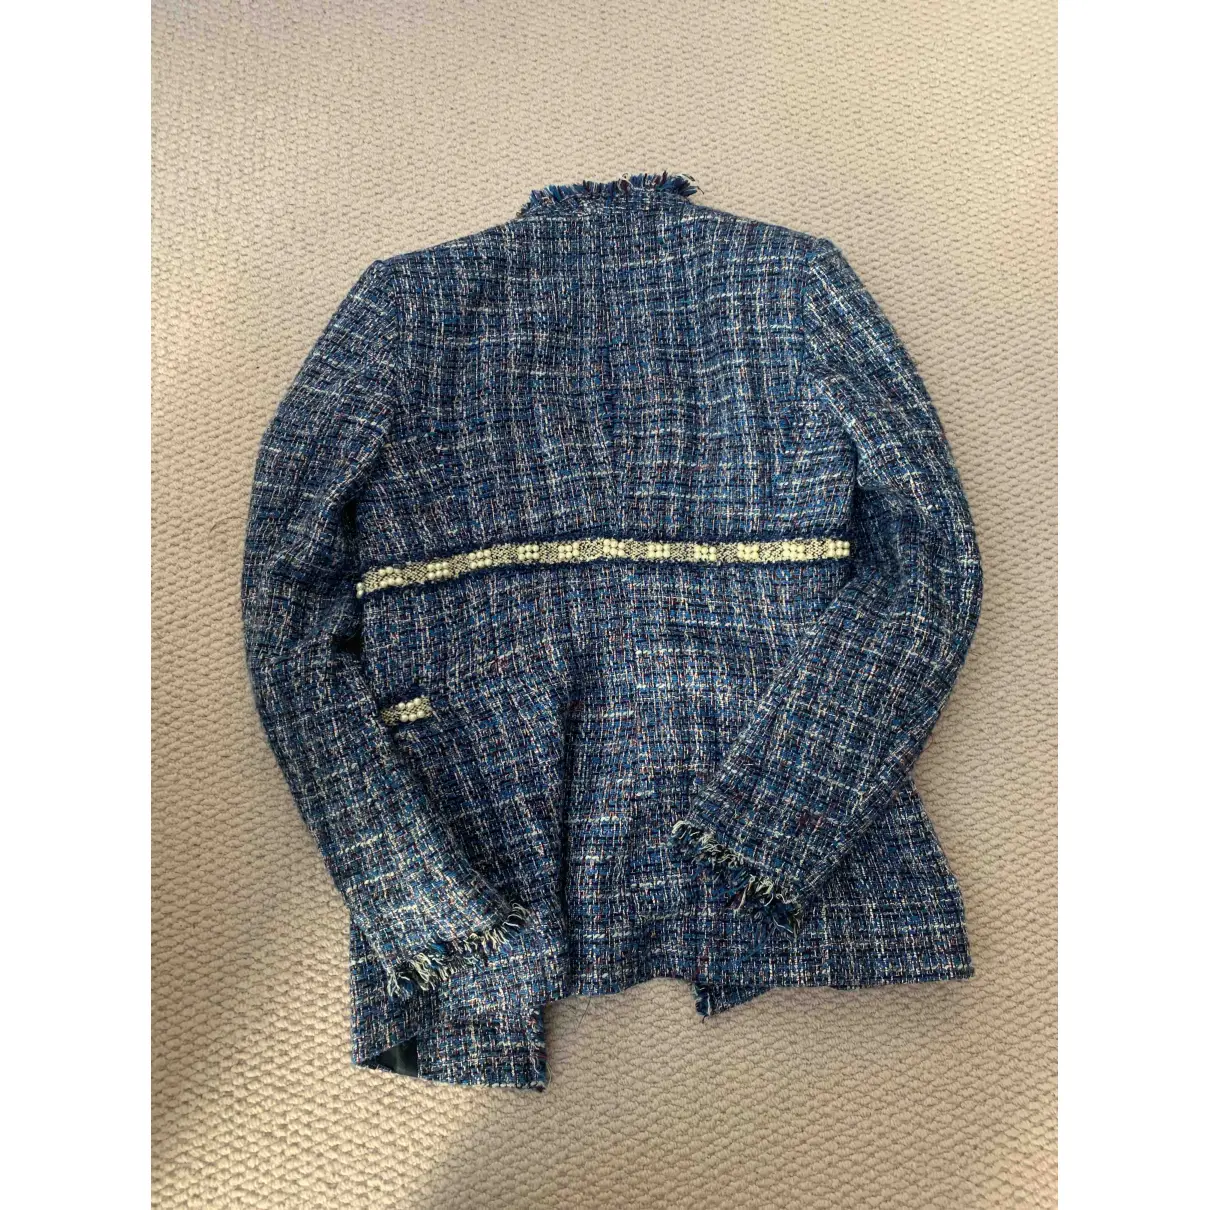 Buy Zara Blue Tweed Jacket online